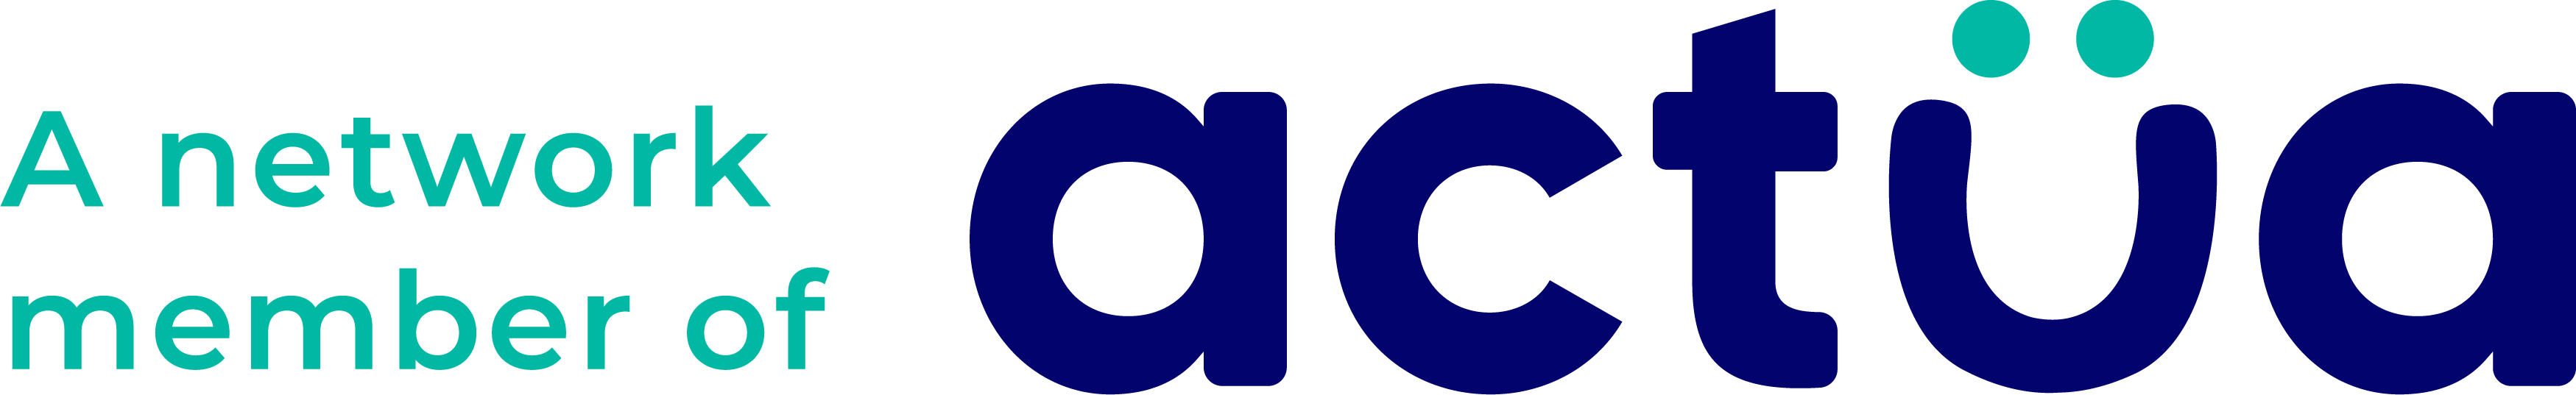 actua_networkmember_logo_cobalt_english.png